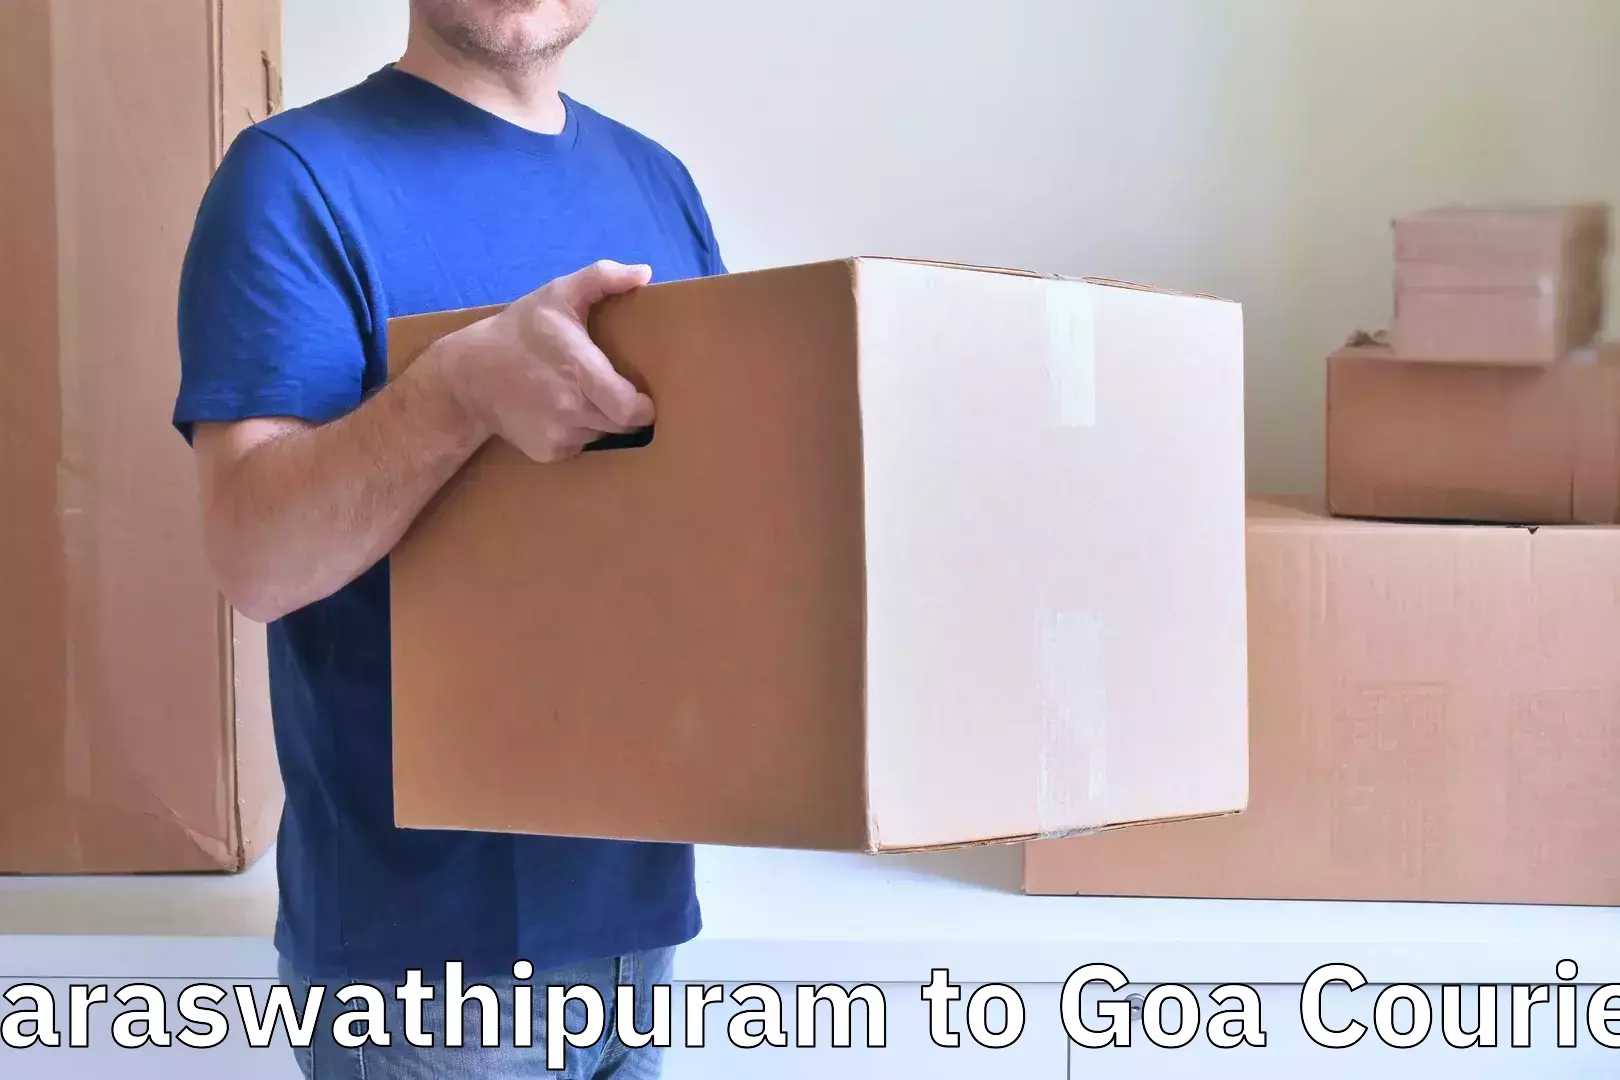 Luggage delivery network Saraswathipuram to NIT Goa